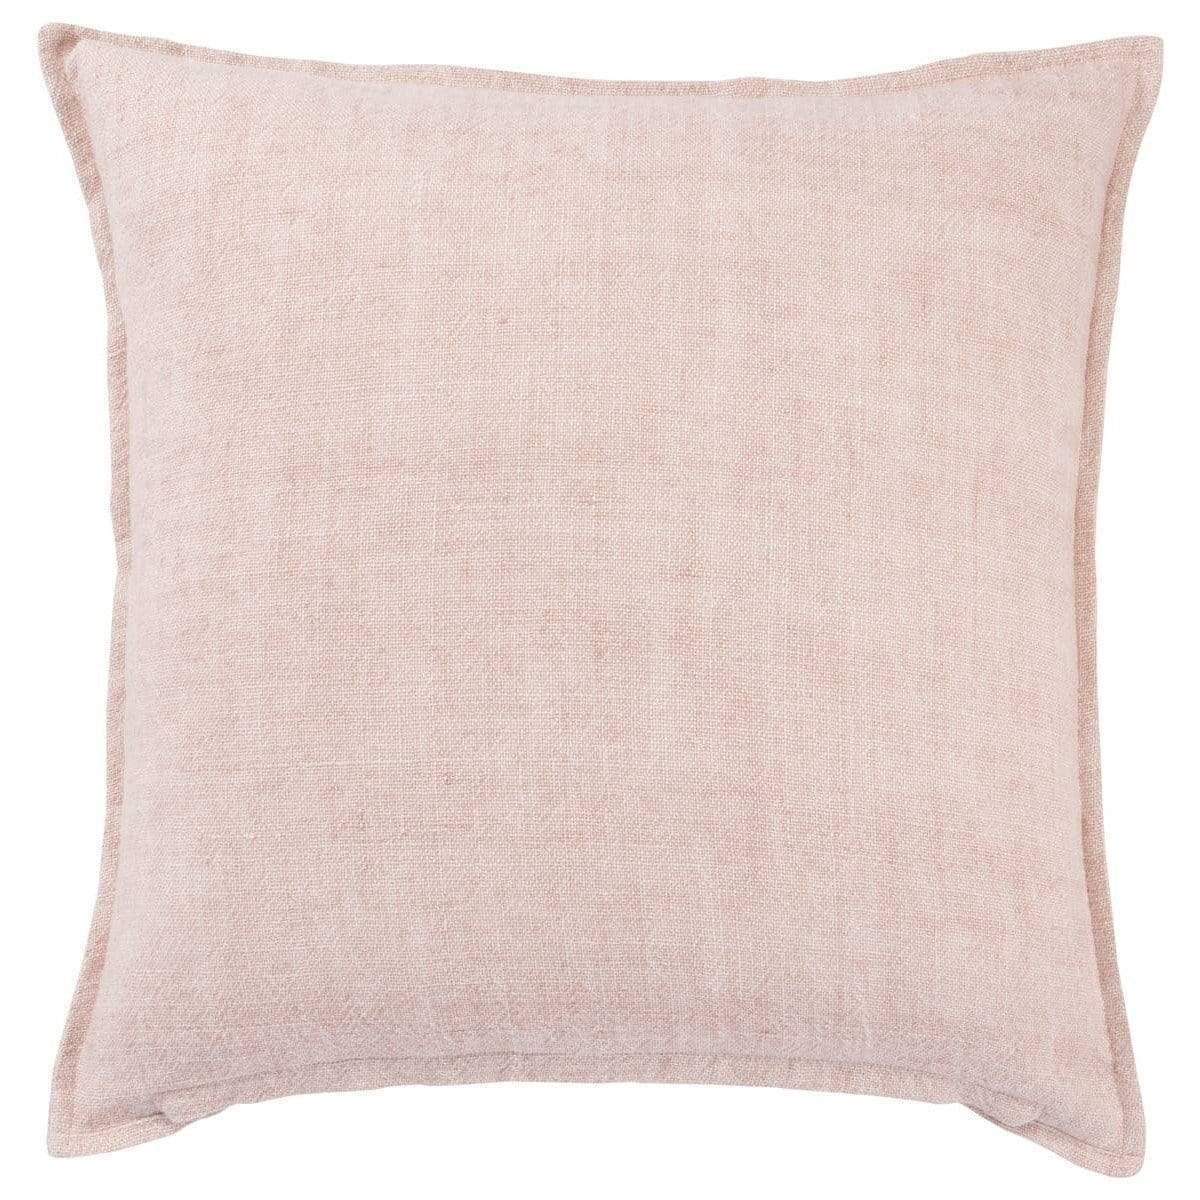 Jaipur Living Burbank Pillow - Aragon Pillow & Decor